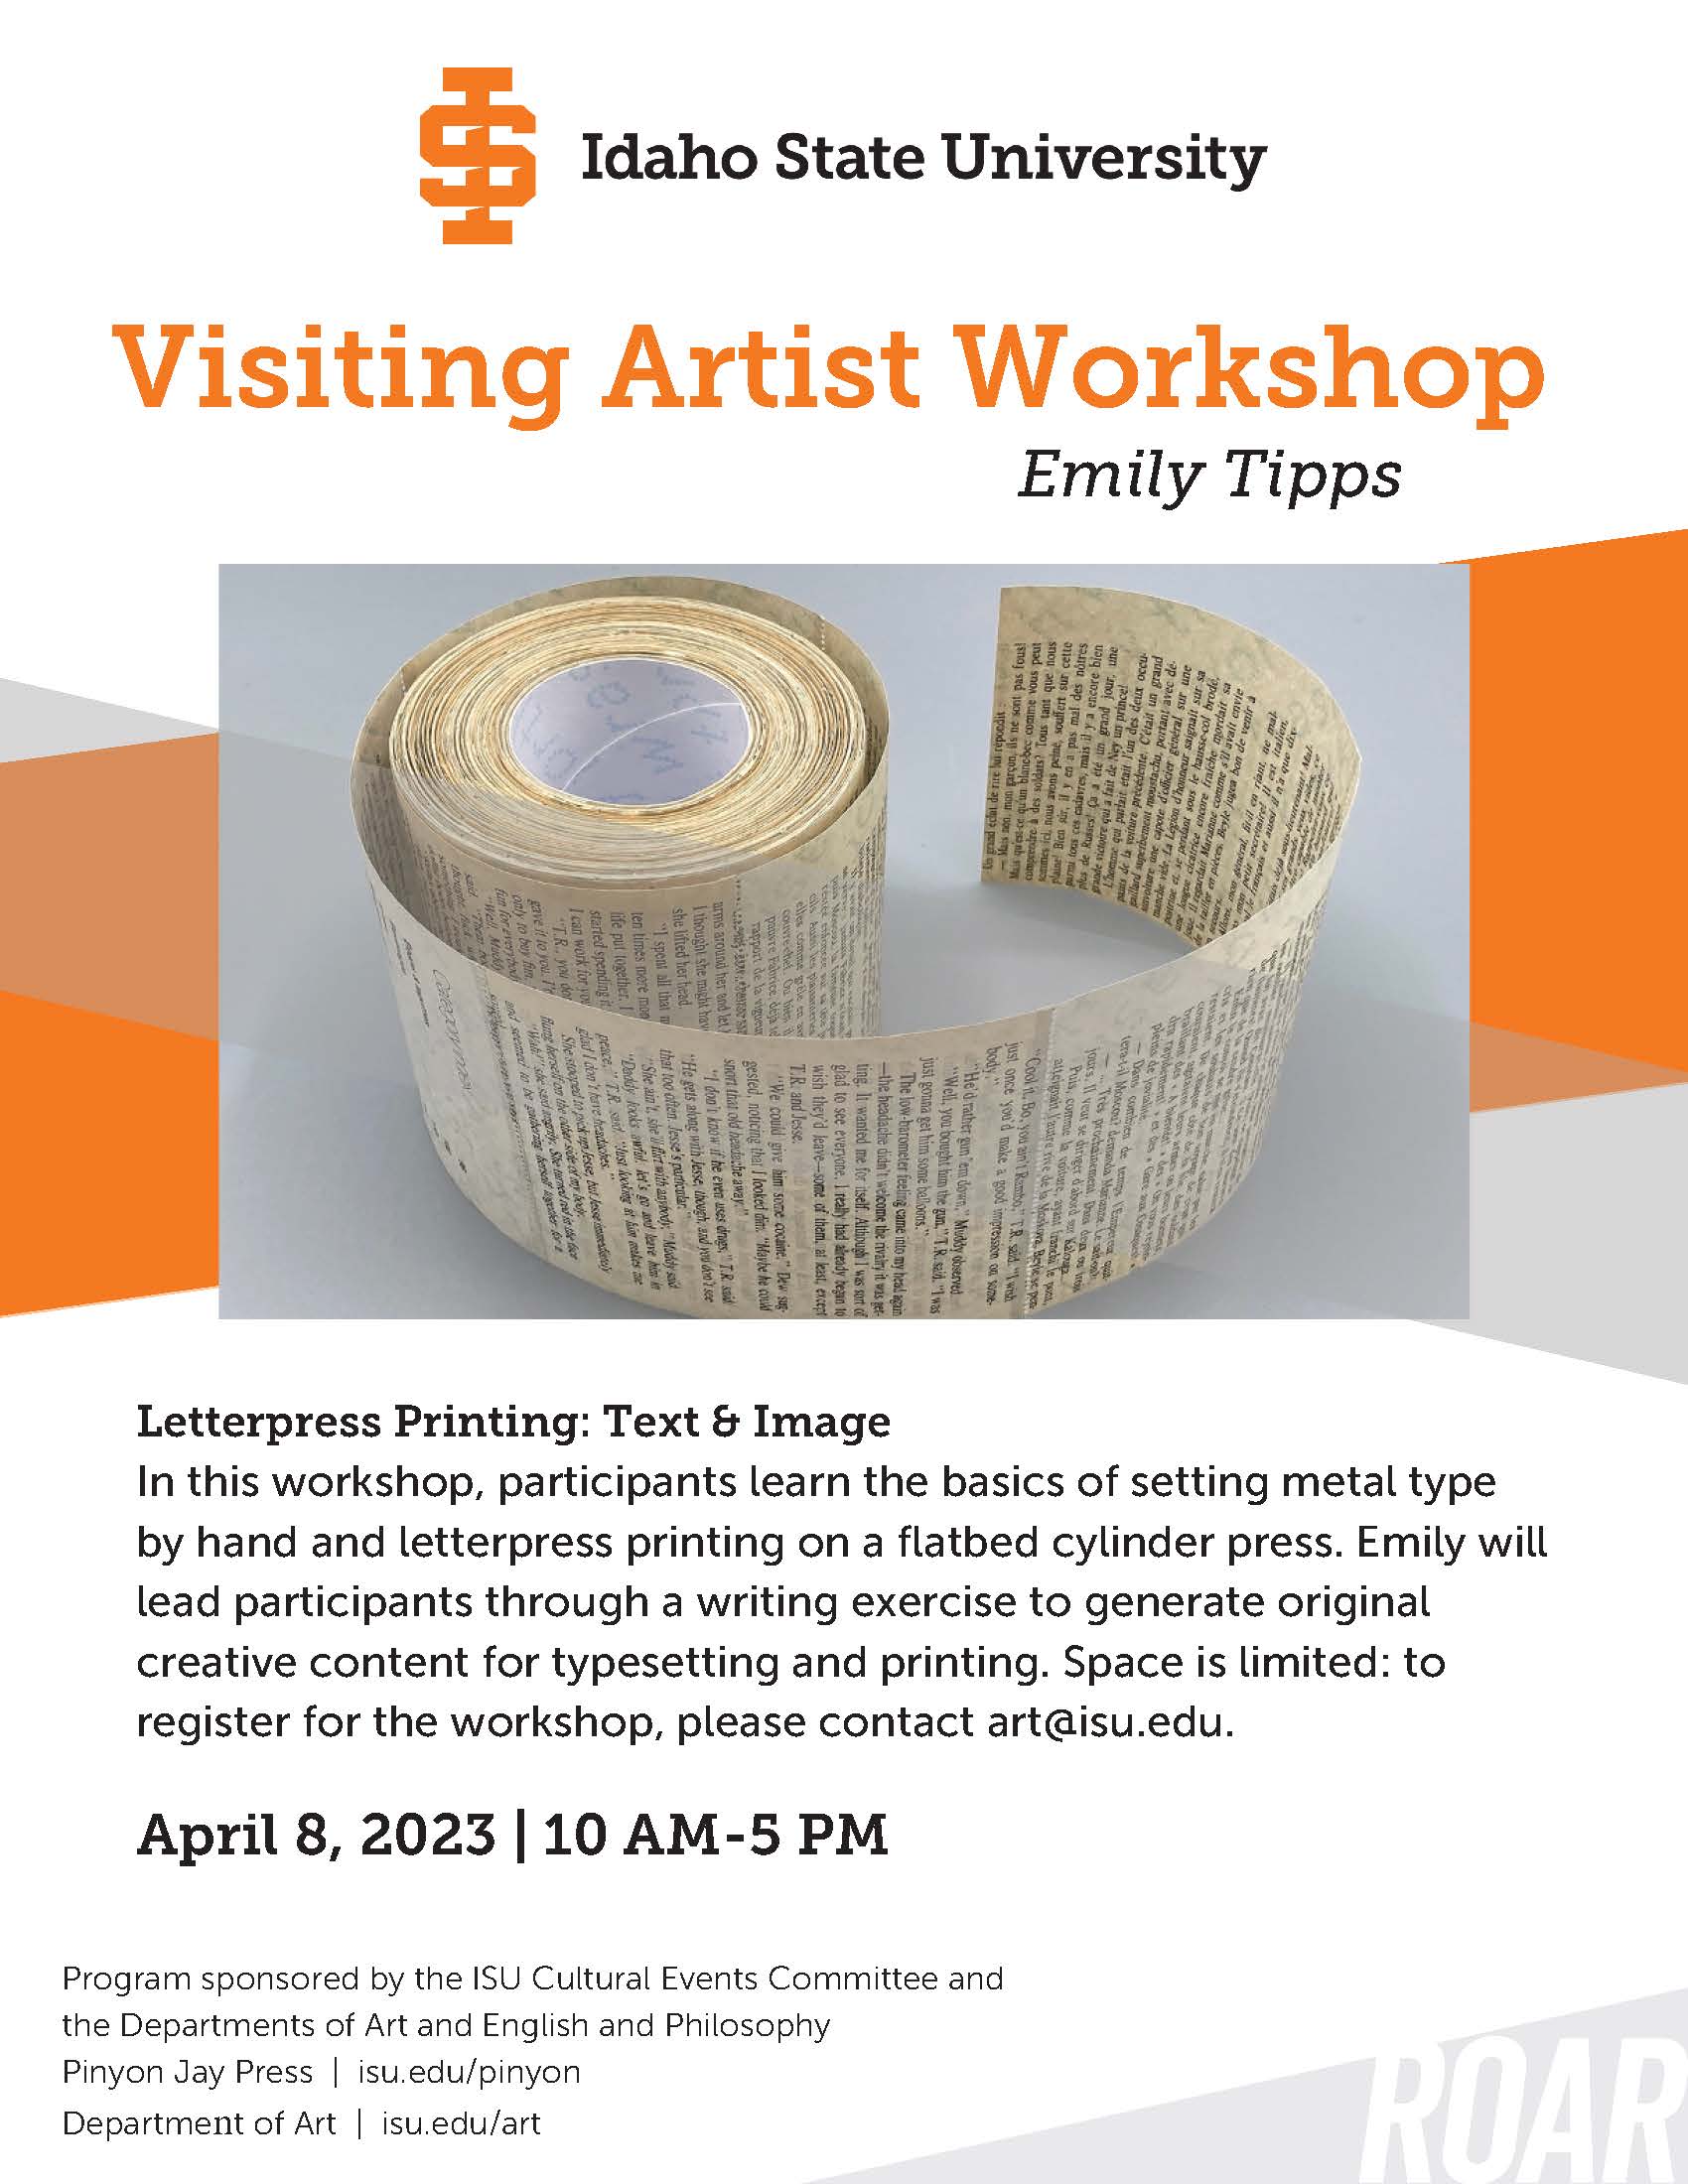 Visiting Artist Emily Tipps-Workshop